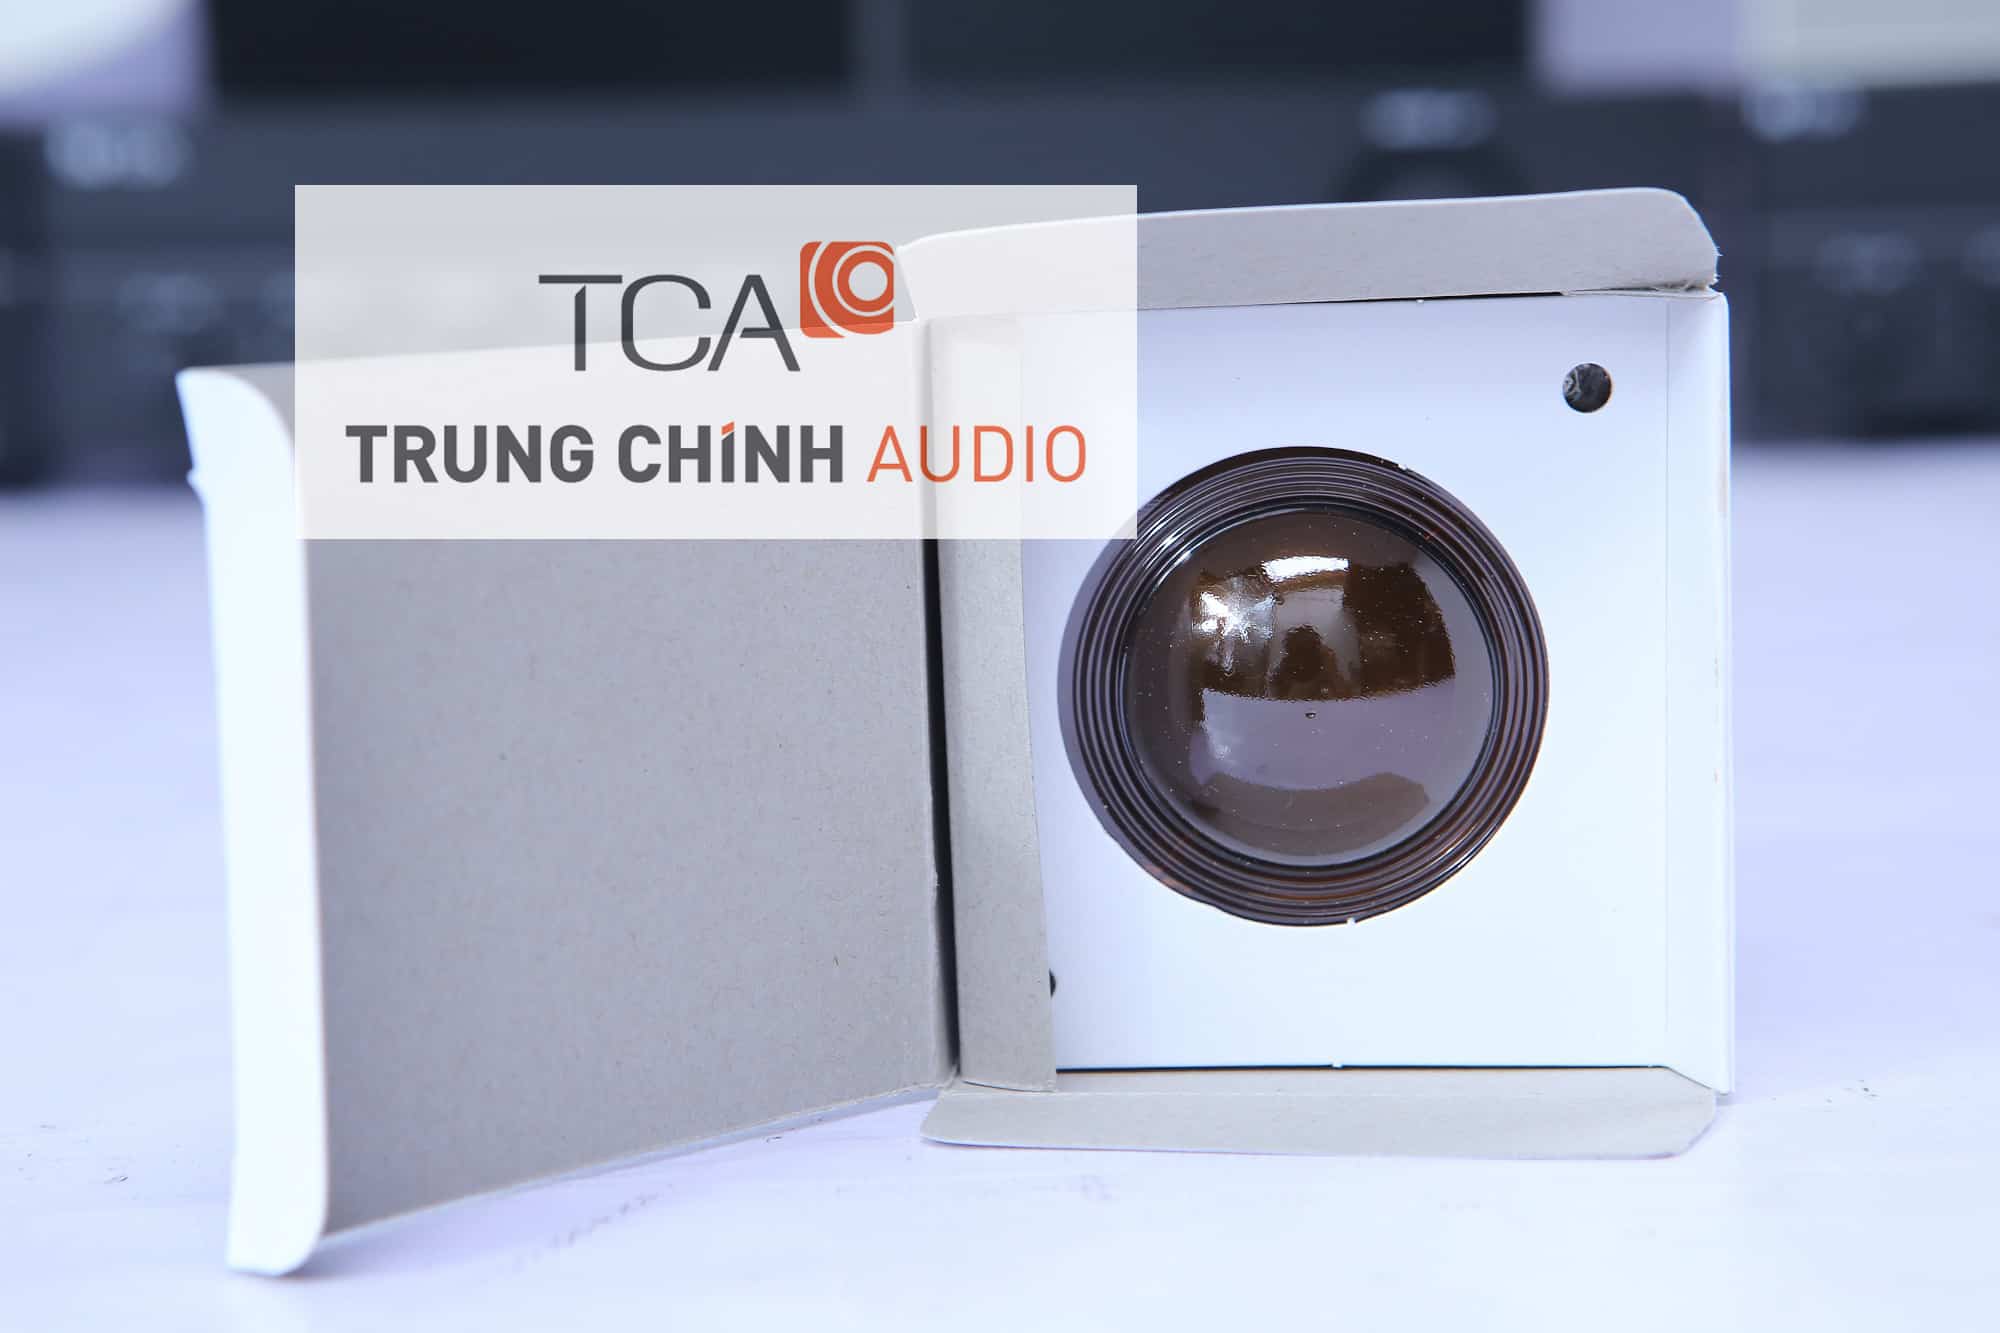 Màng loa TOA DG-10C-A chính hãng của TOA phân phối tại Trung Chính Audio